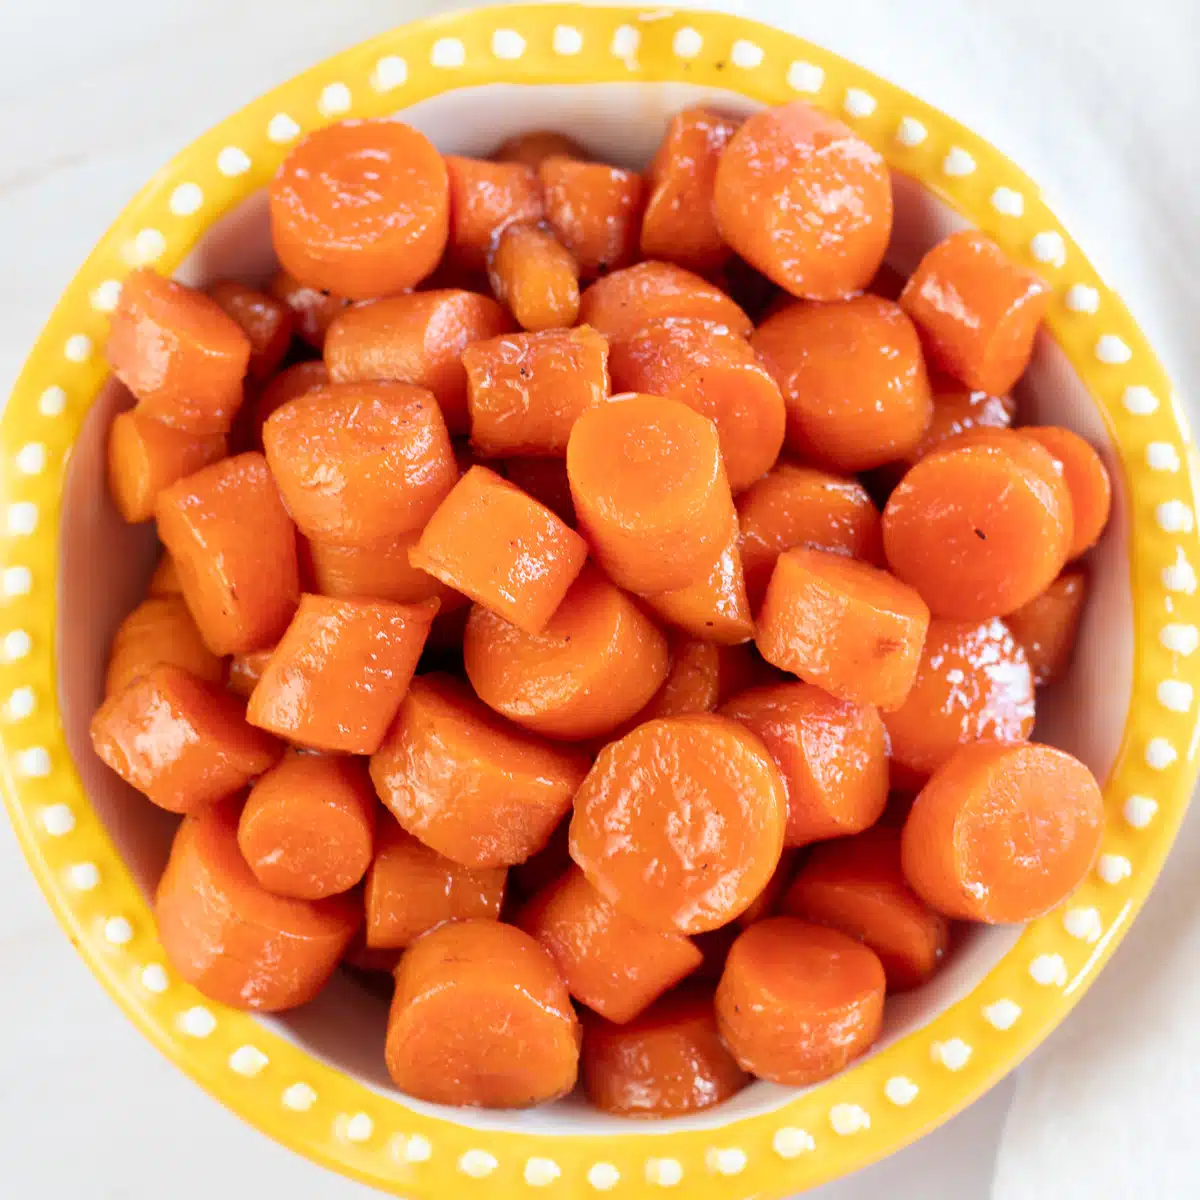 कैंडिड गाजर के कटोरे की वर्गाकार छवि।